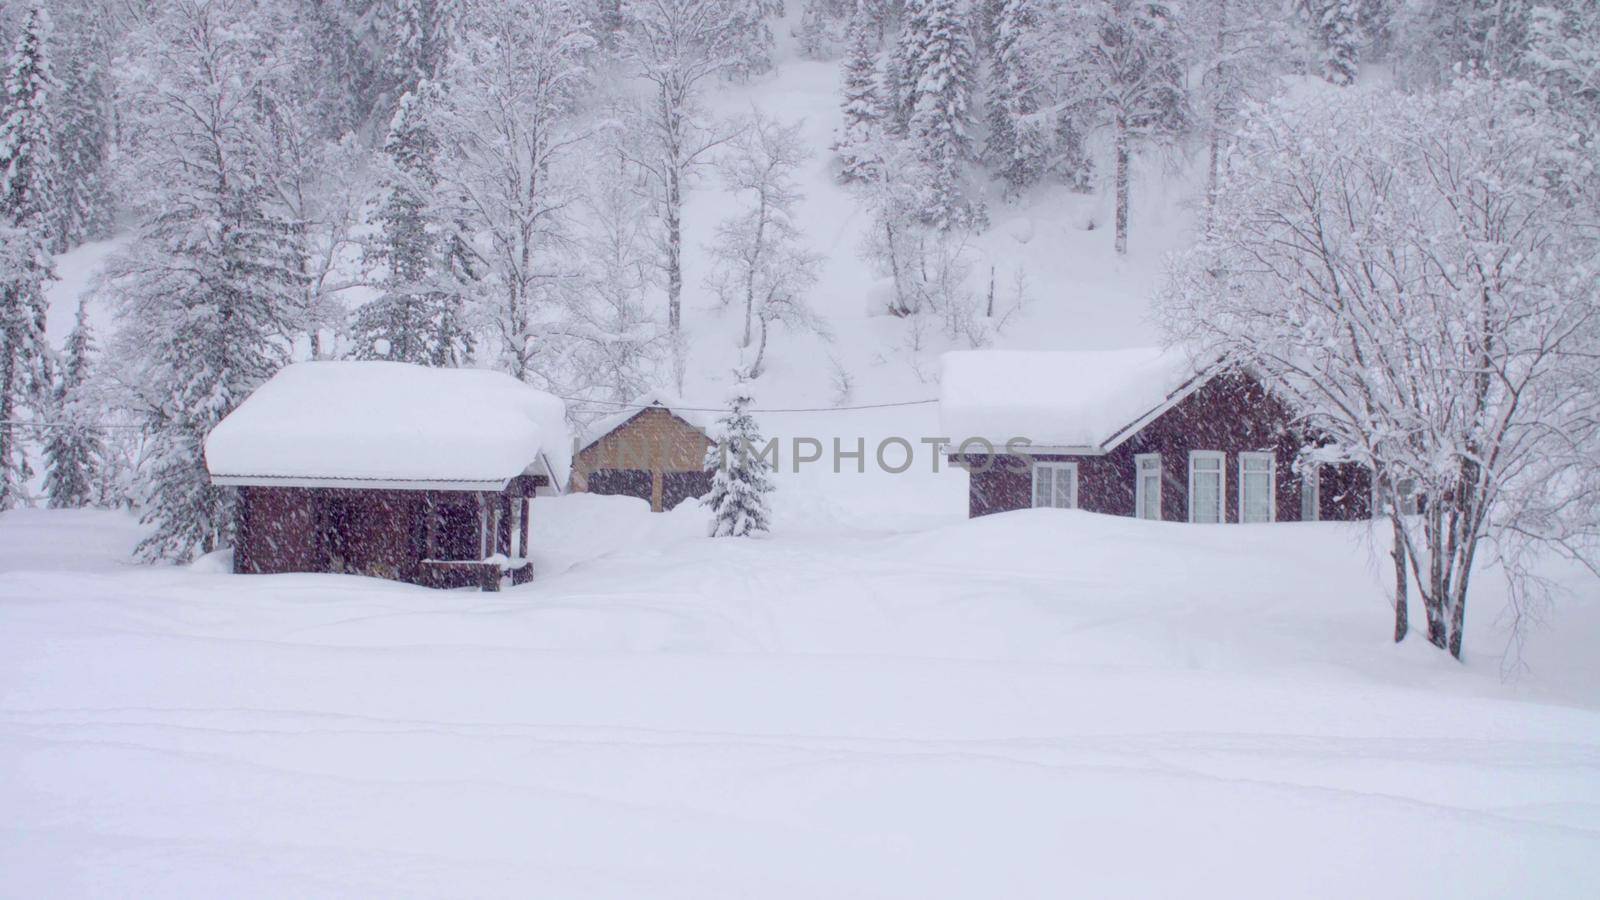 Snowfall in the skitouring lodge in Siberia by Chudakov